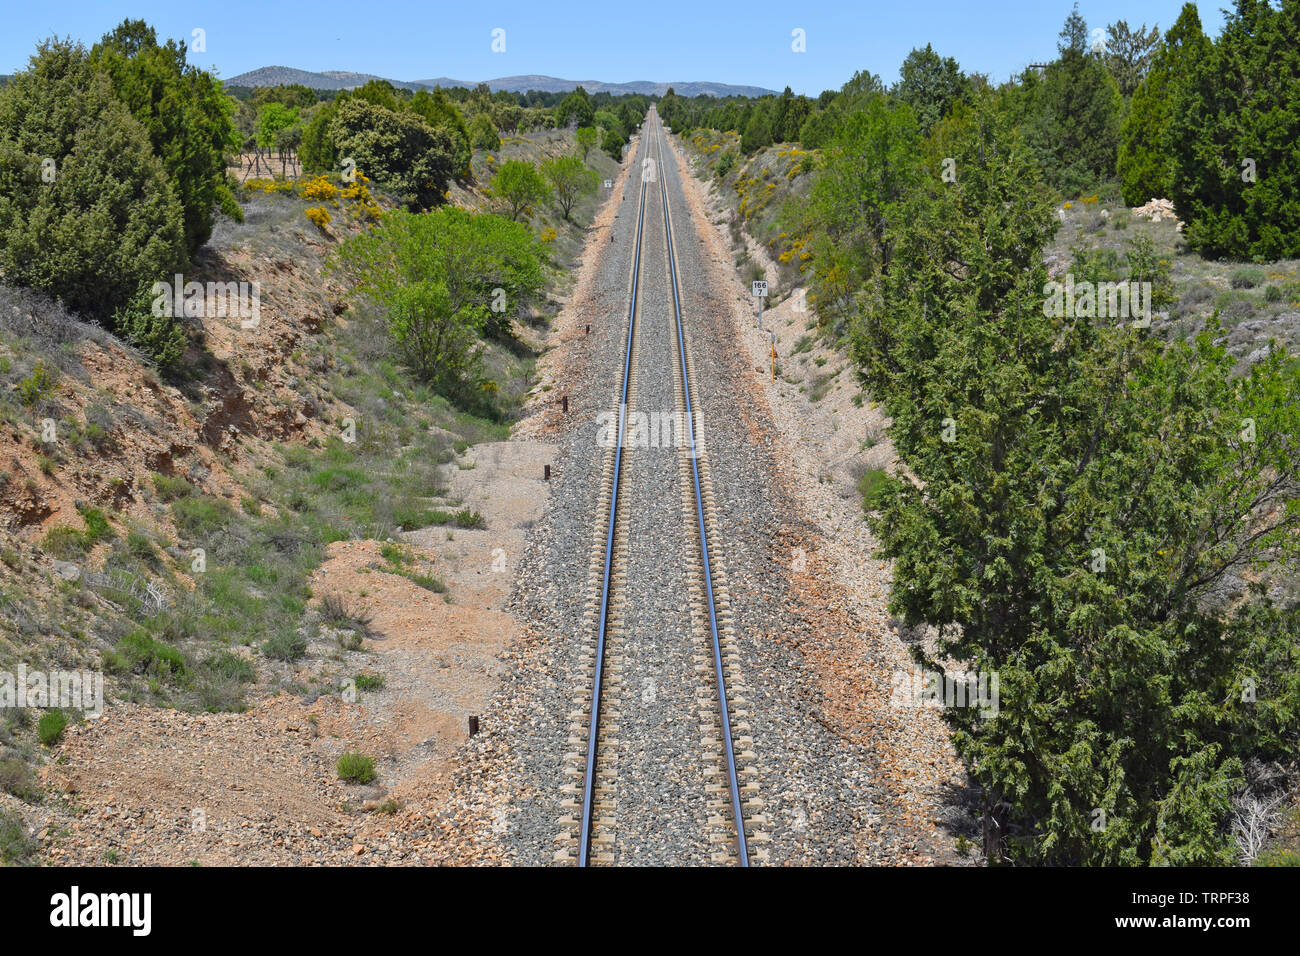 Vias de tren, in the province of Teruel Spain Stock Photo